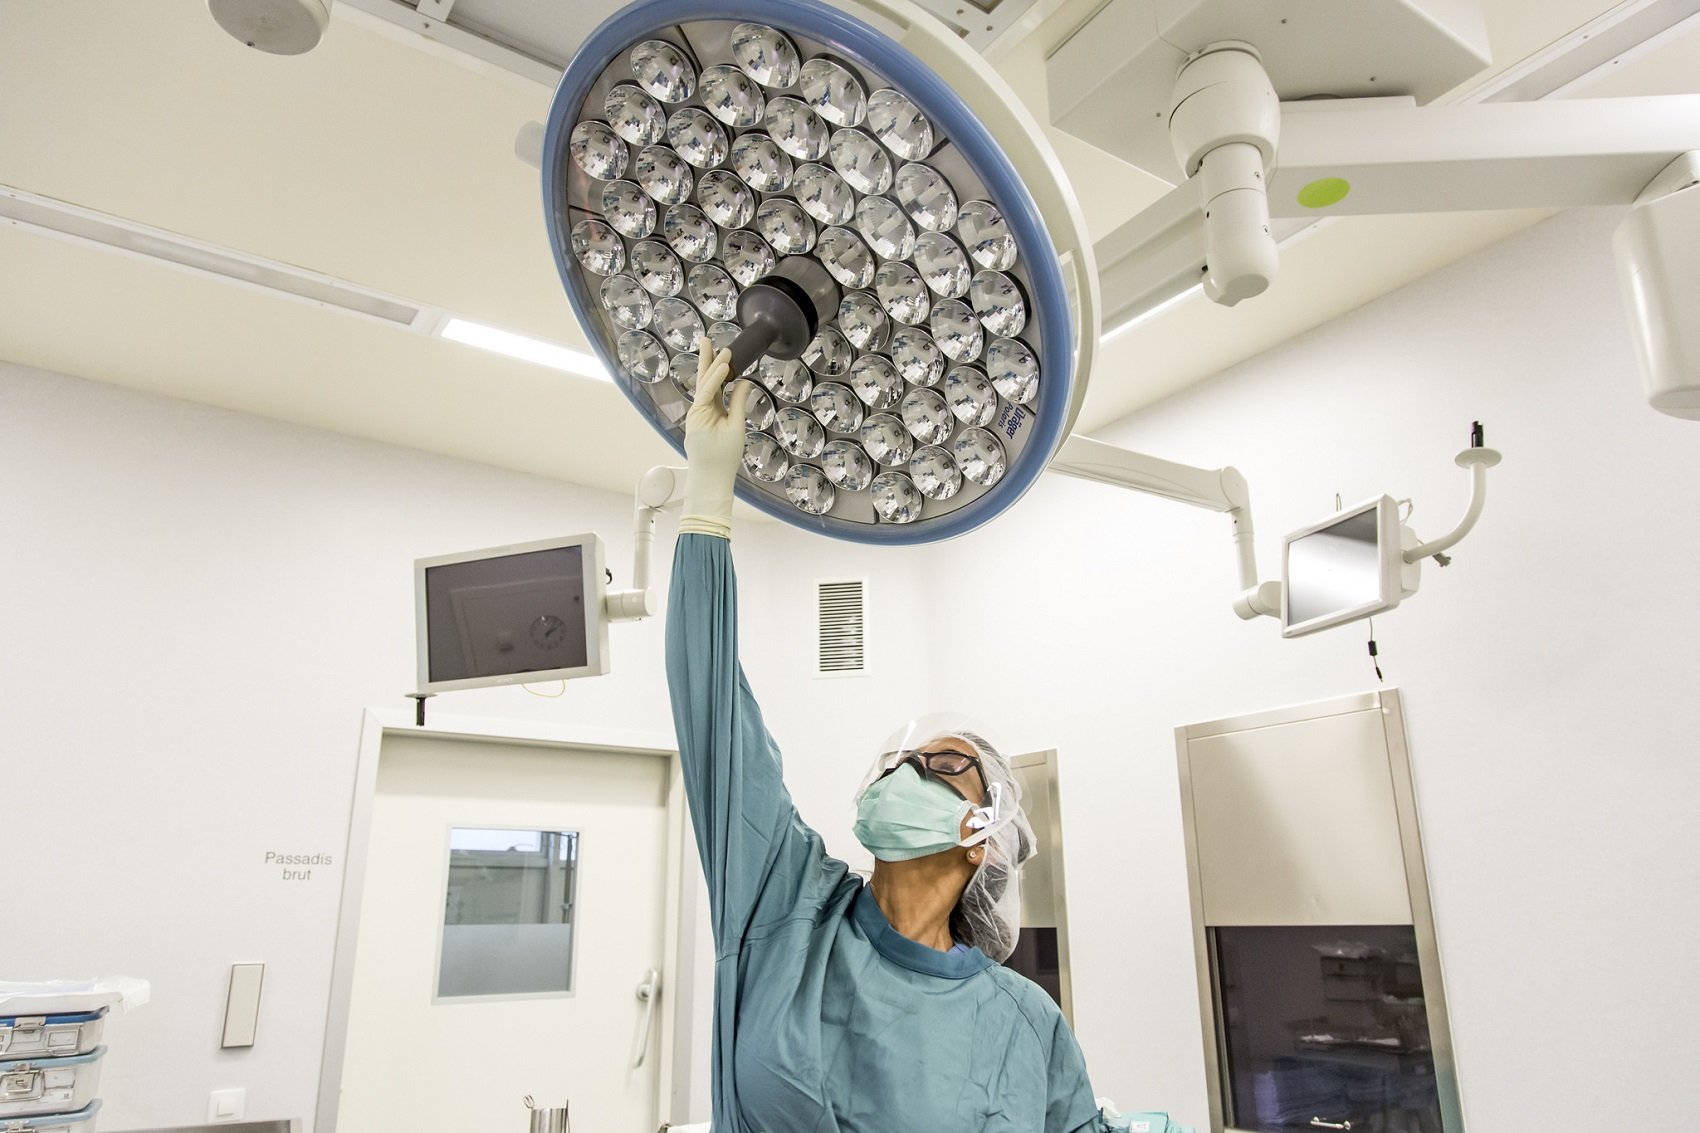 Primera cirurgia làser a l'Estat per tractar l'epilèpsia i tumors cerebrals